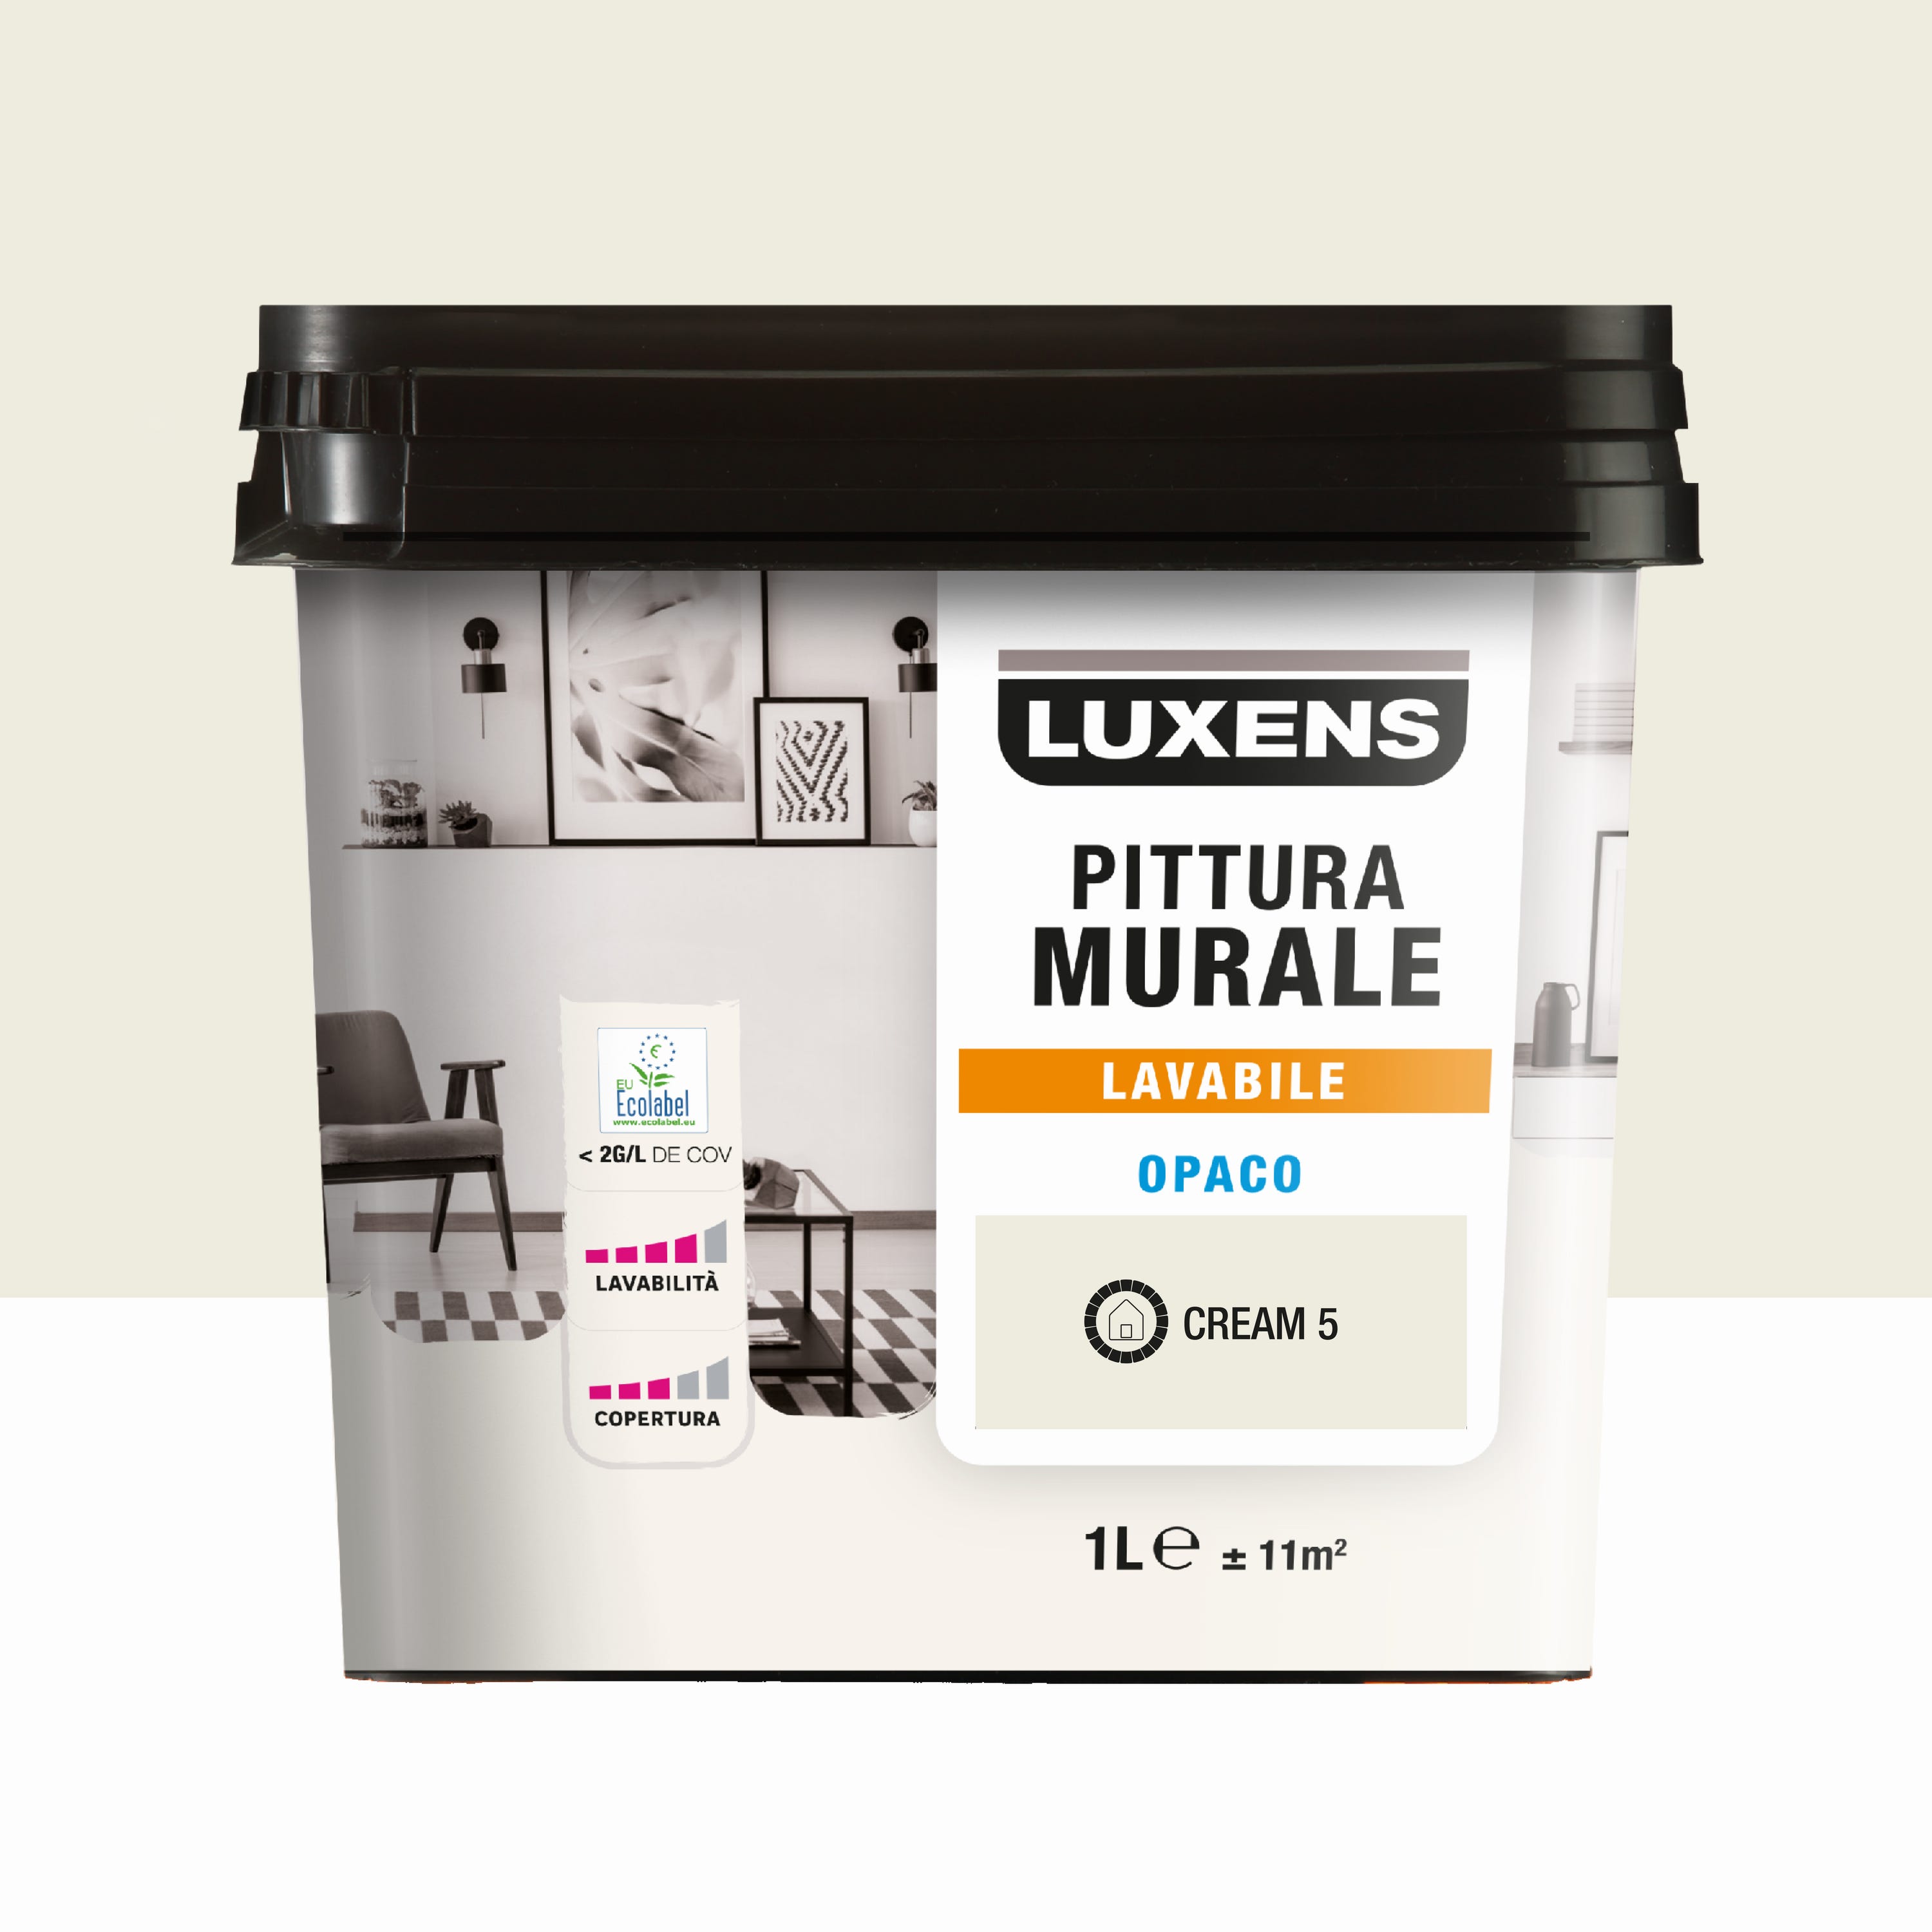 Pittura per interni lavabile, LUXENS Opaca beige cream 5 opaco, 1 L